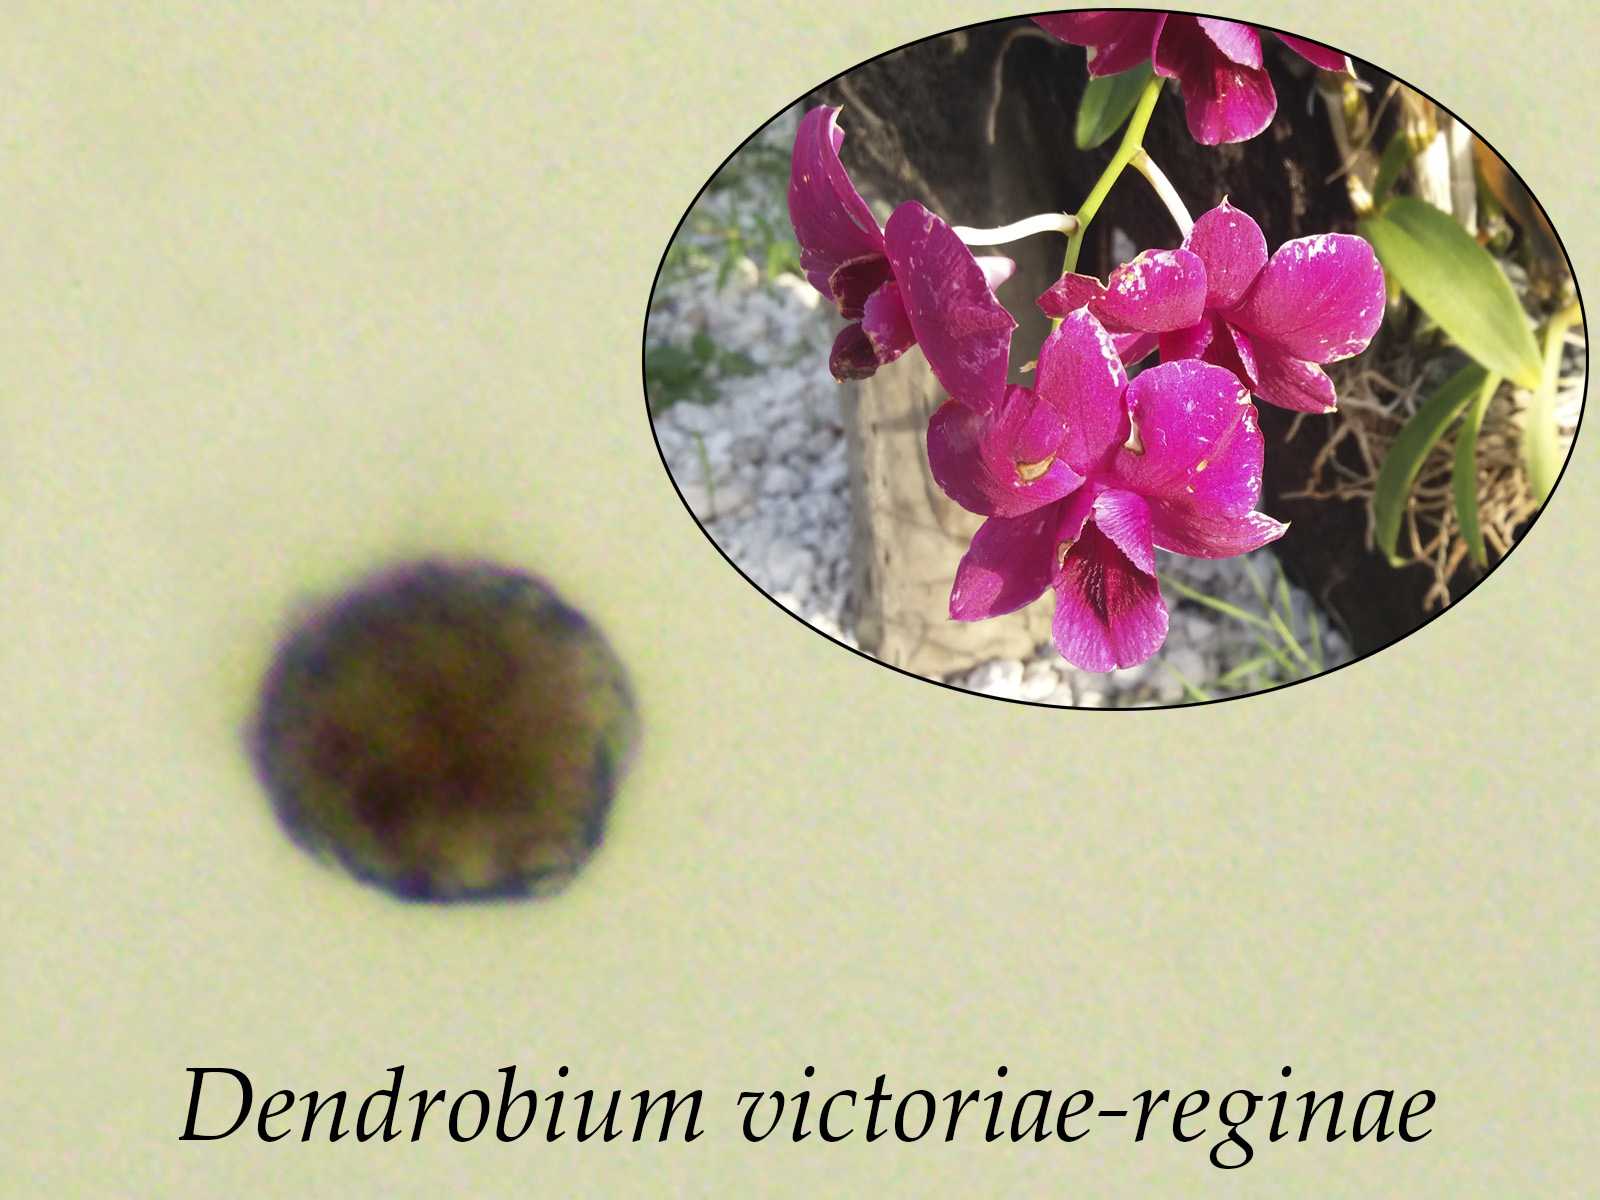 Dendrobiumvictoriae-reginae.jpg